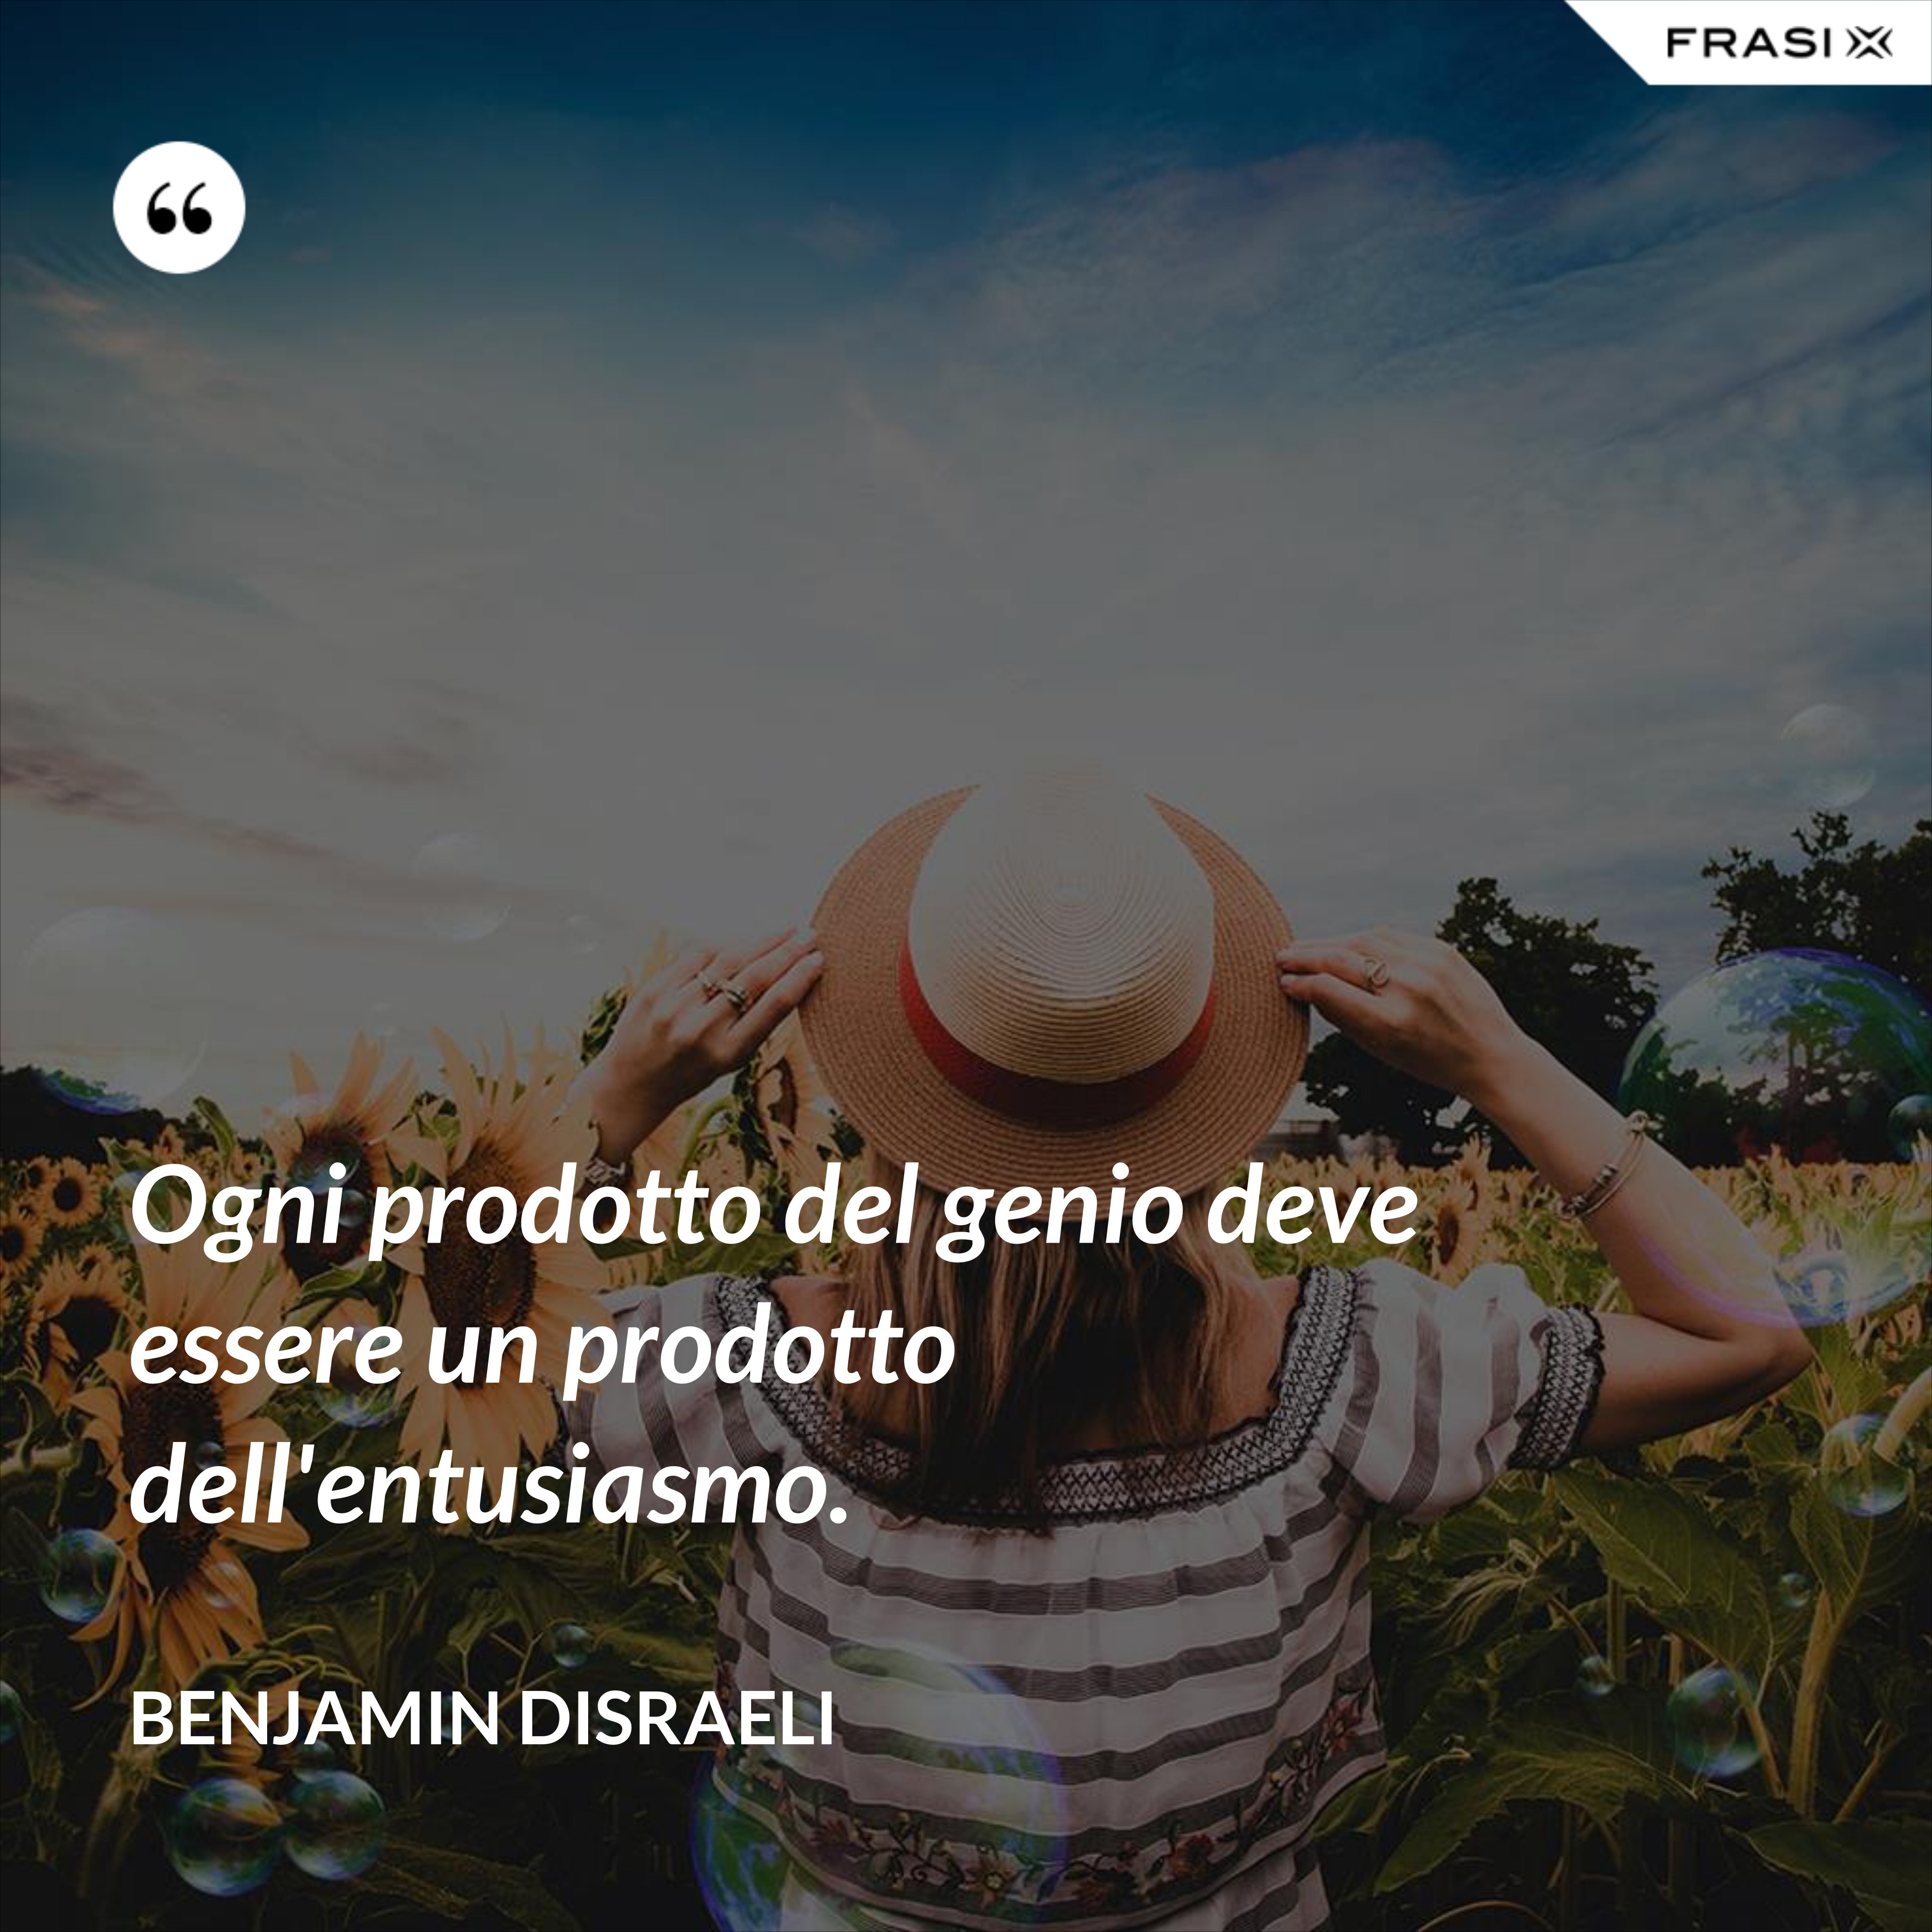 Ogni prodotto del genio deve essere un prodotto dell'entusiasmo. - Benjamin Disraeli